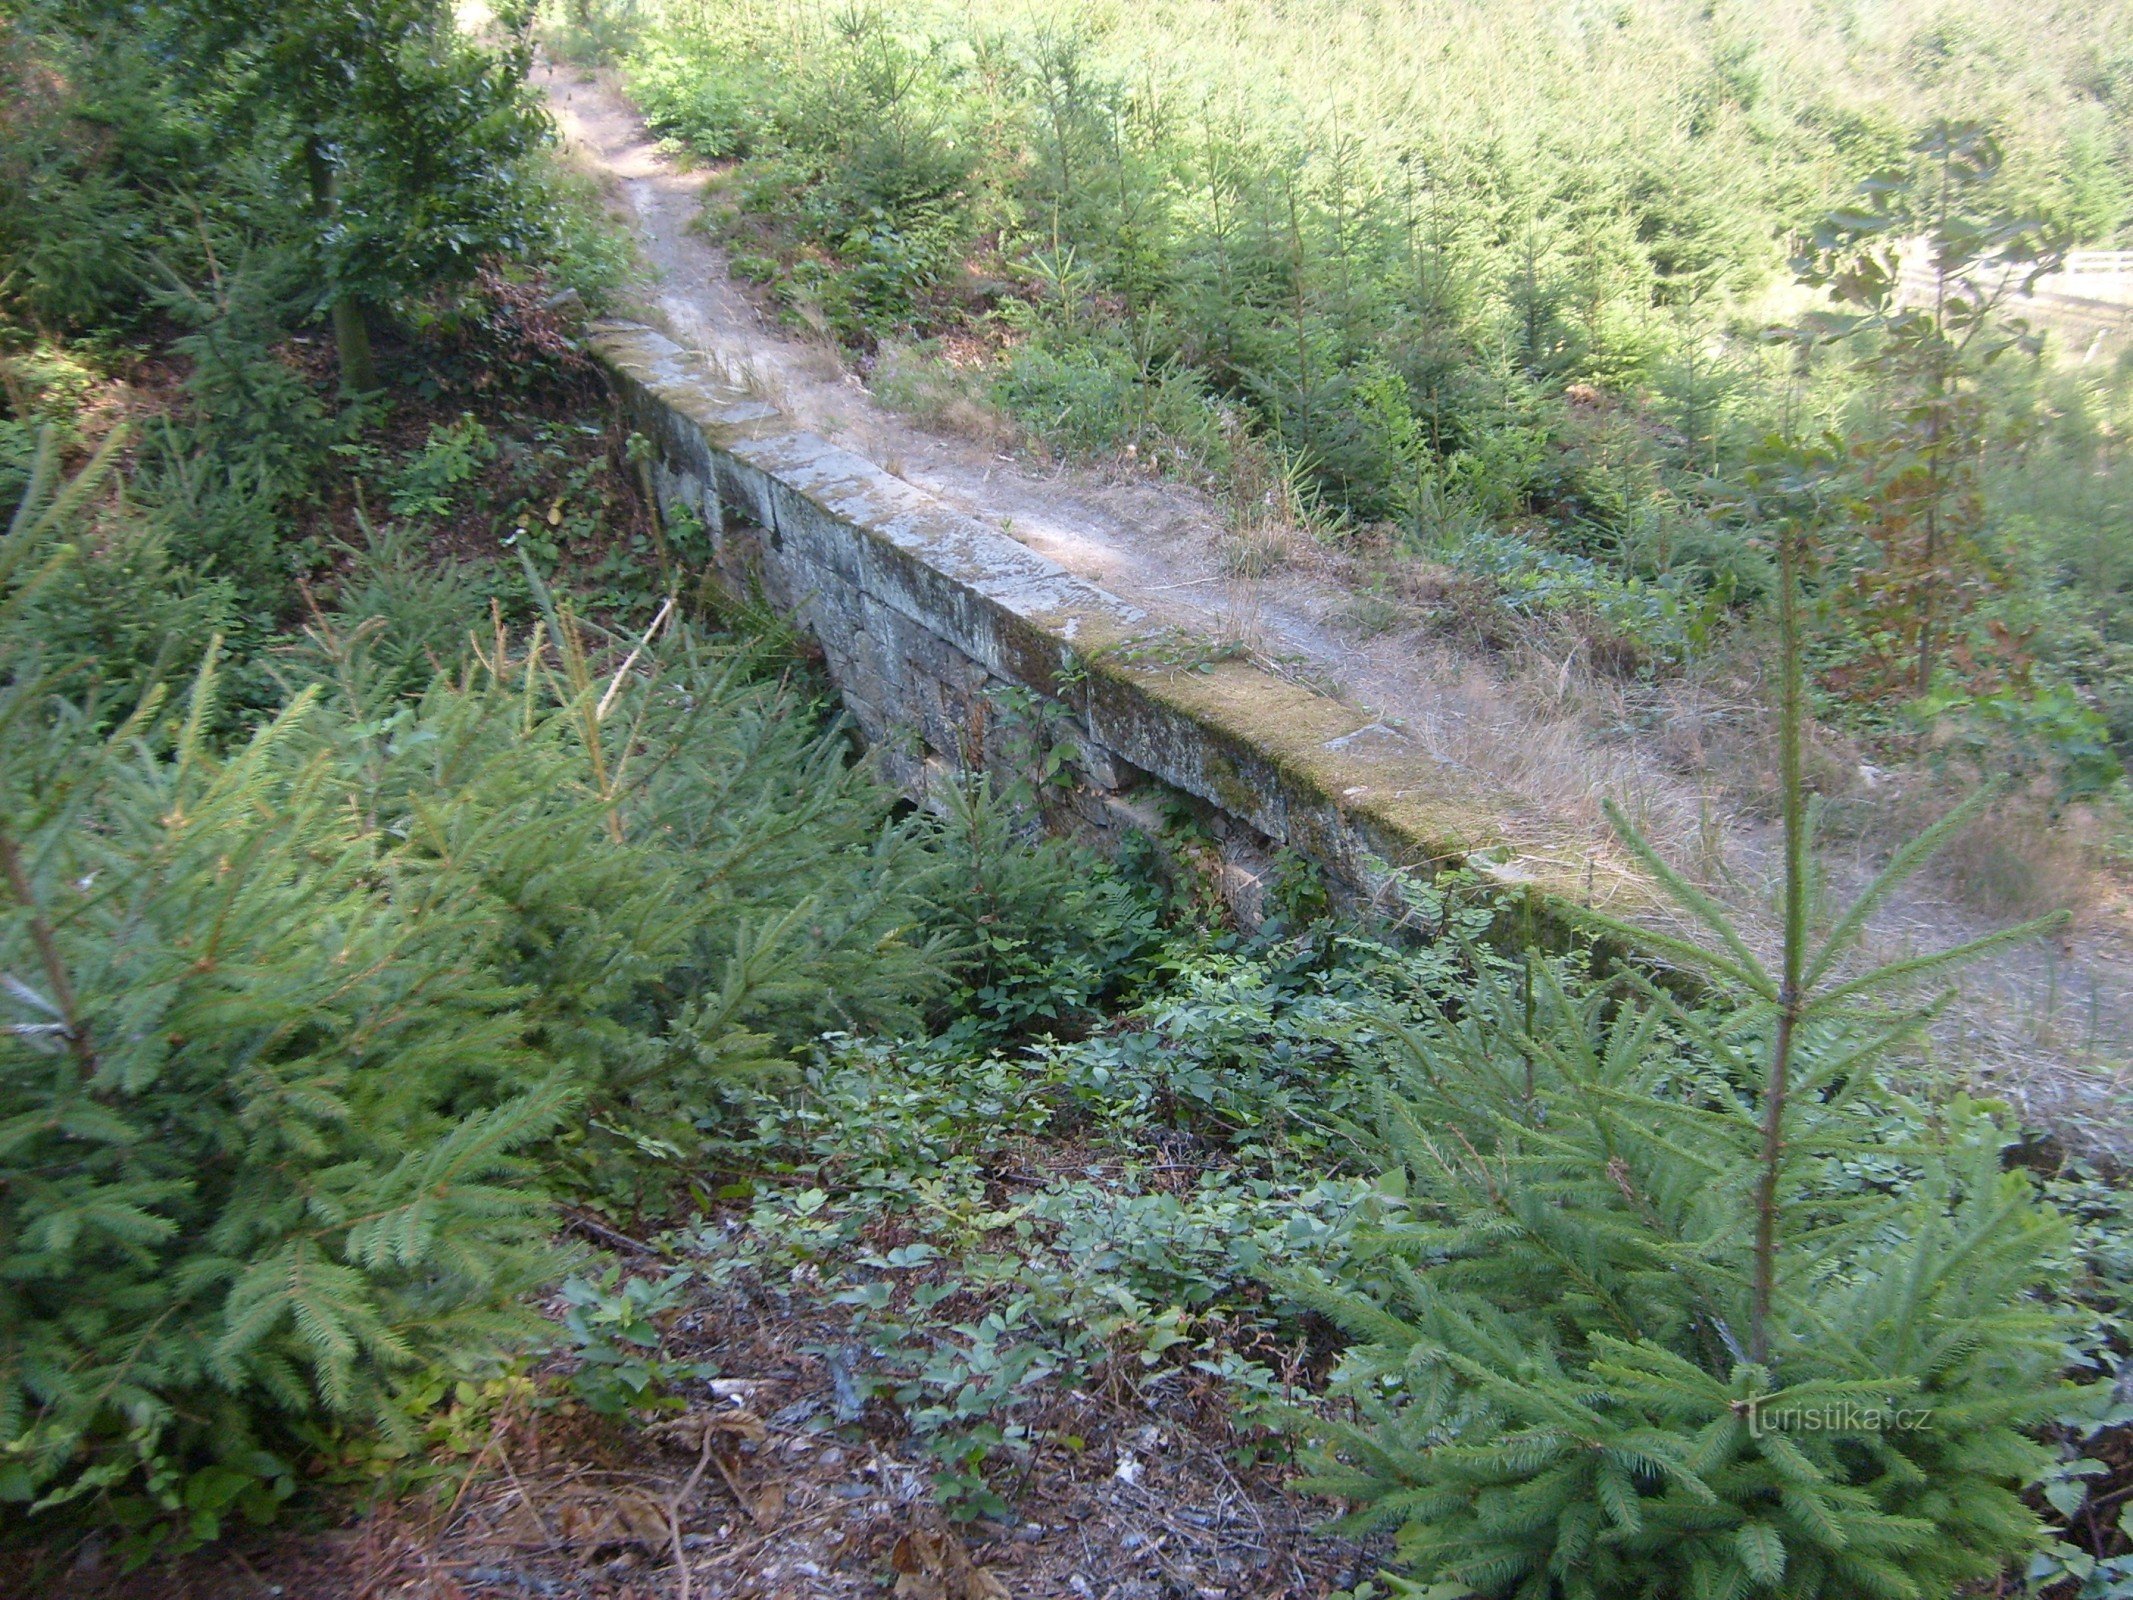 Pod de piatră sub cariera U Svatého Josef de lângă Hořice